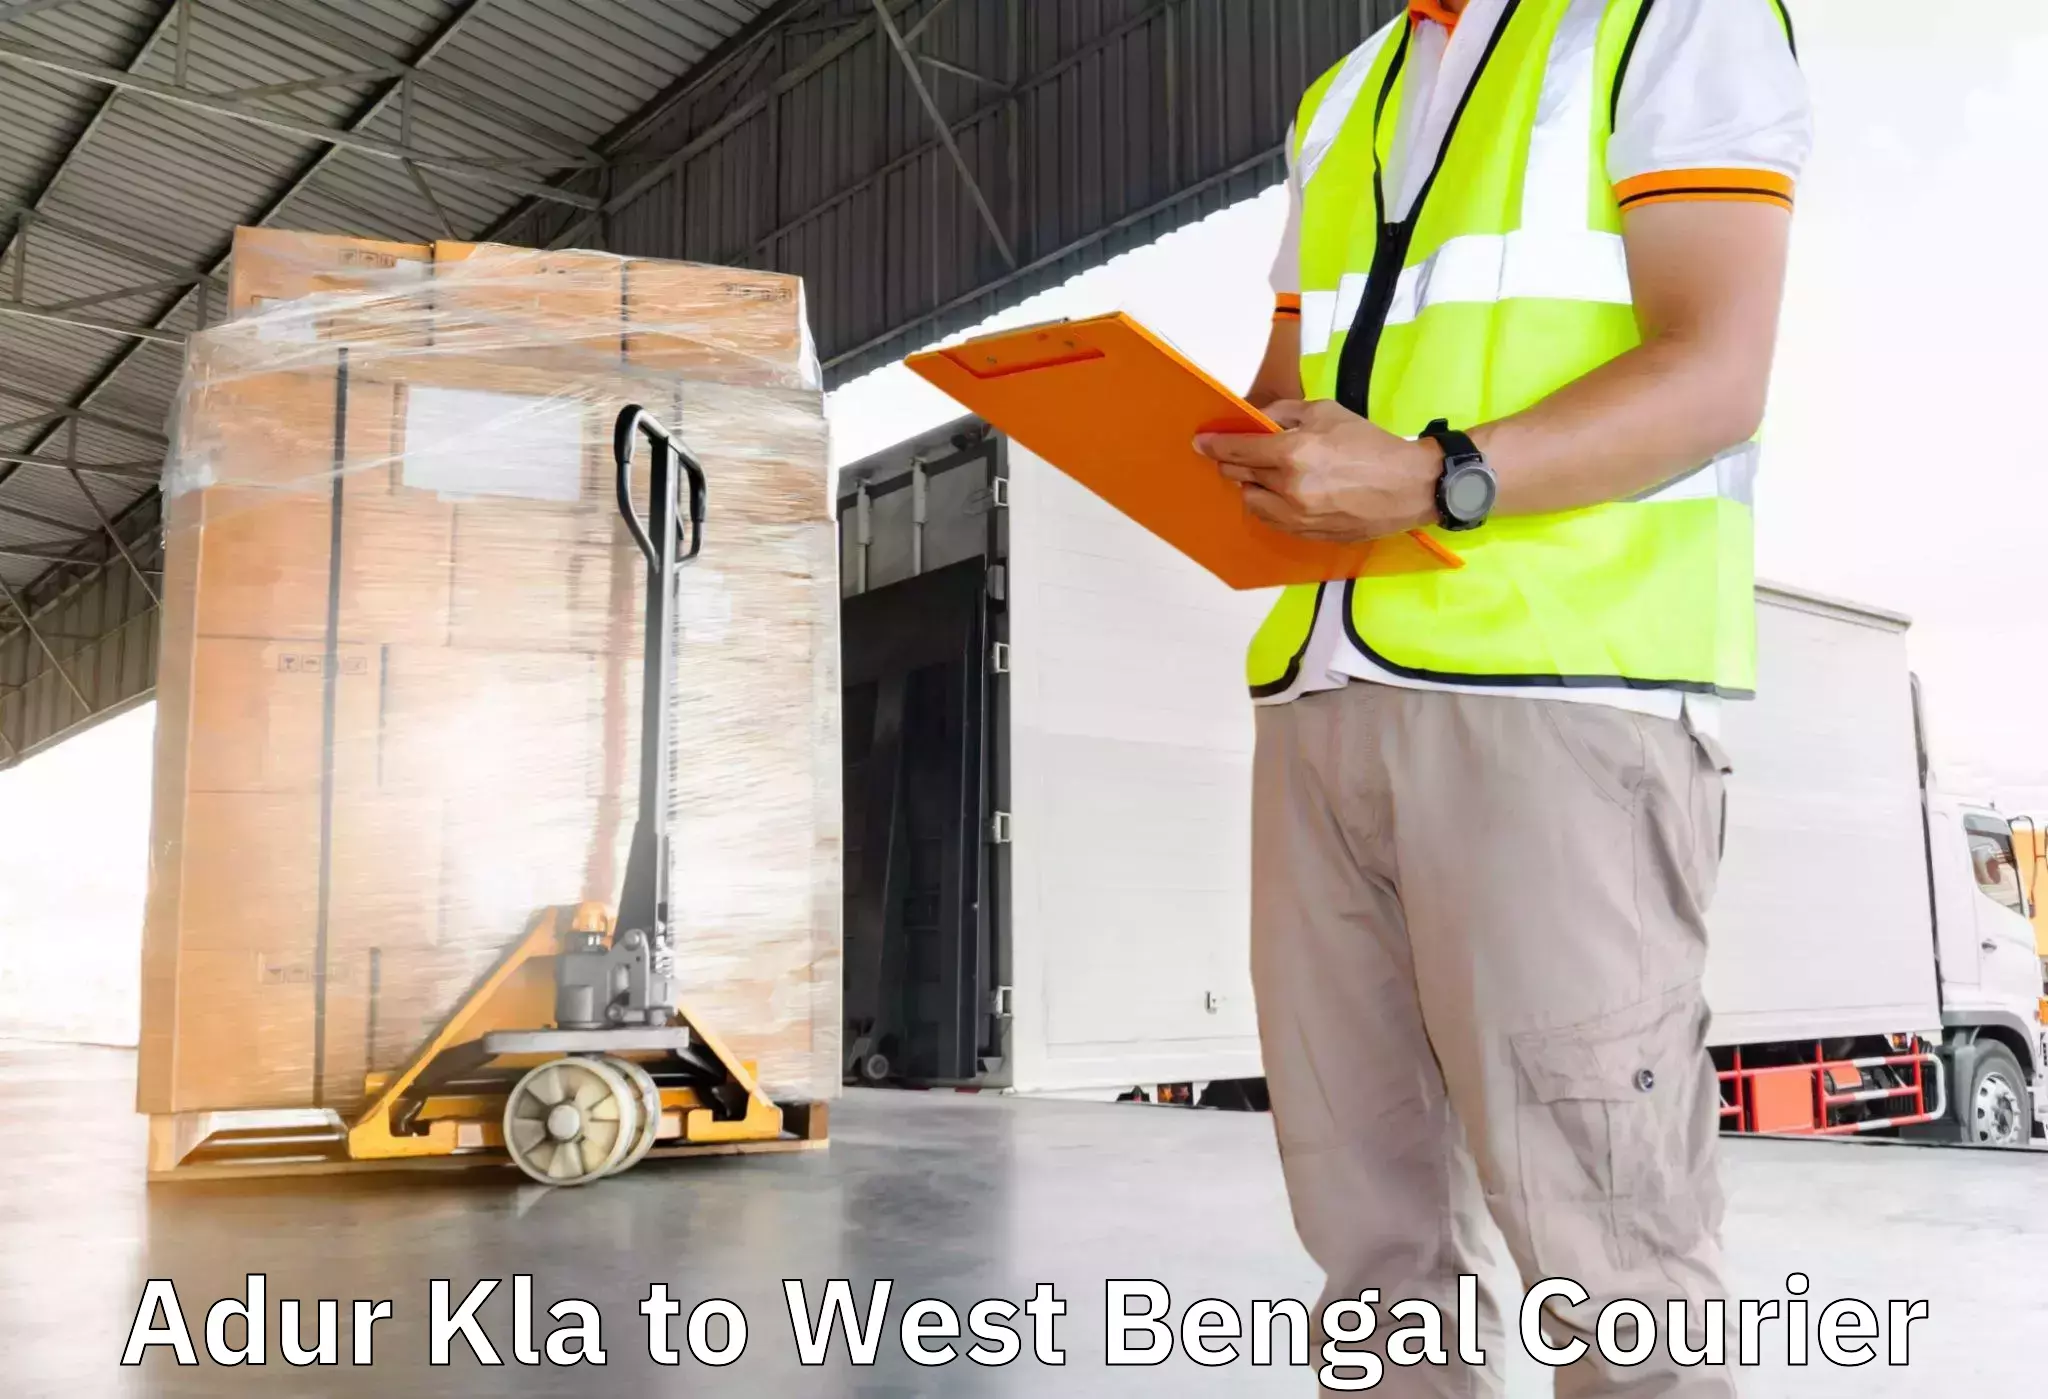 Furniture transport professionals Adur Kla to Kalimpong